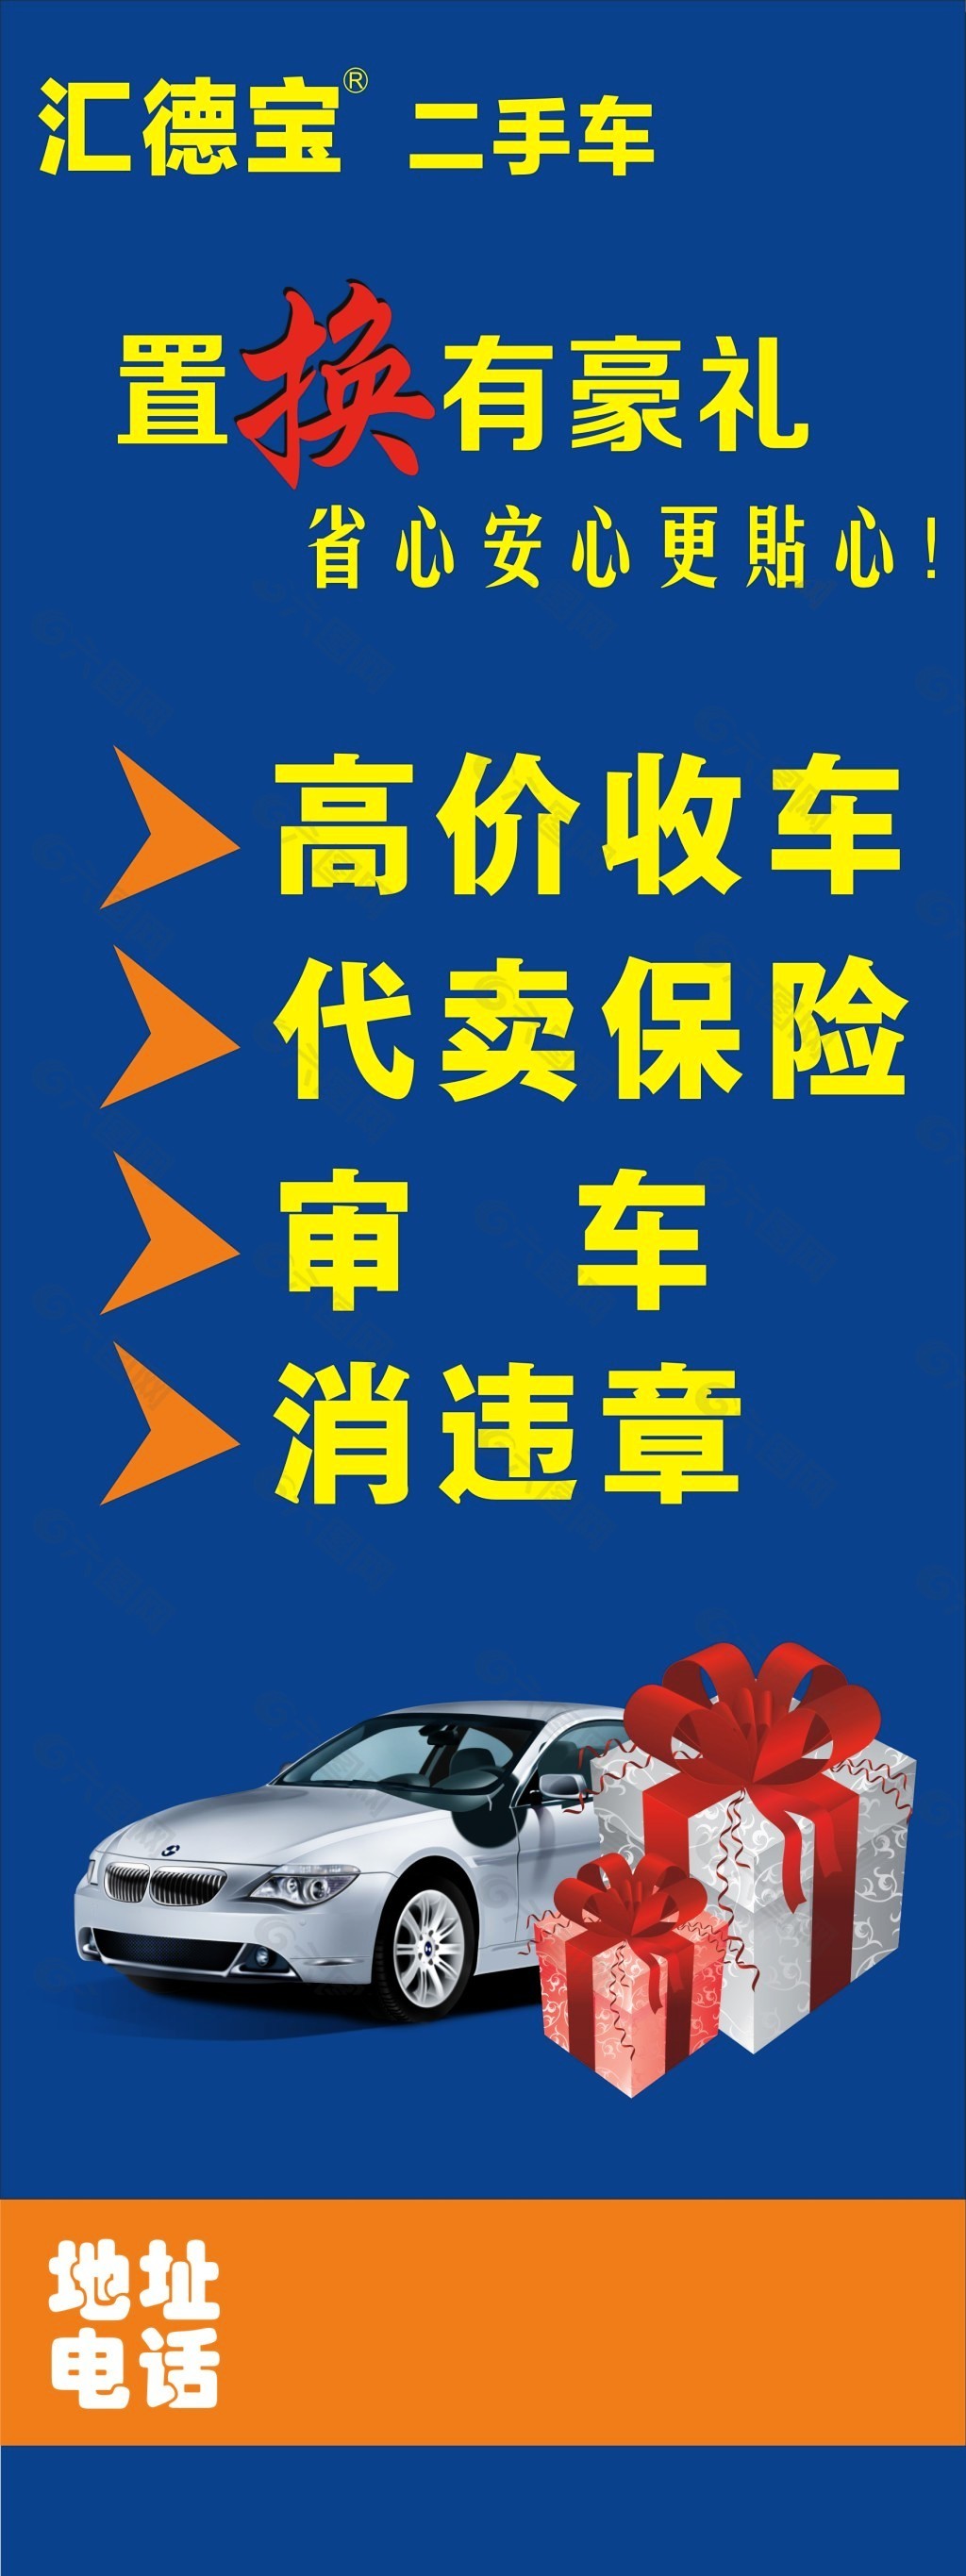 二手车收购易拉宝平面广告素材免费下载(图片编号:5516734)